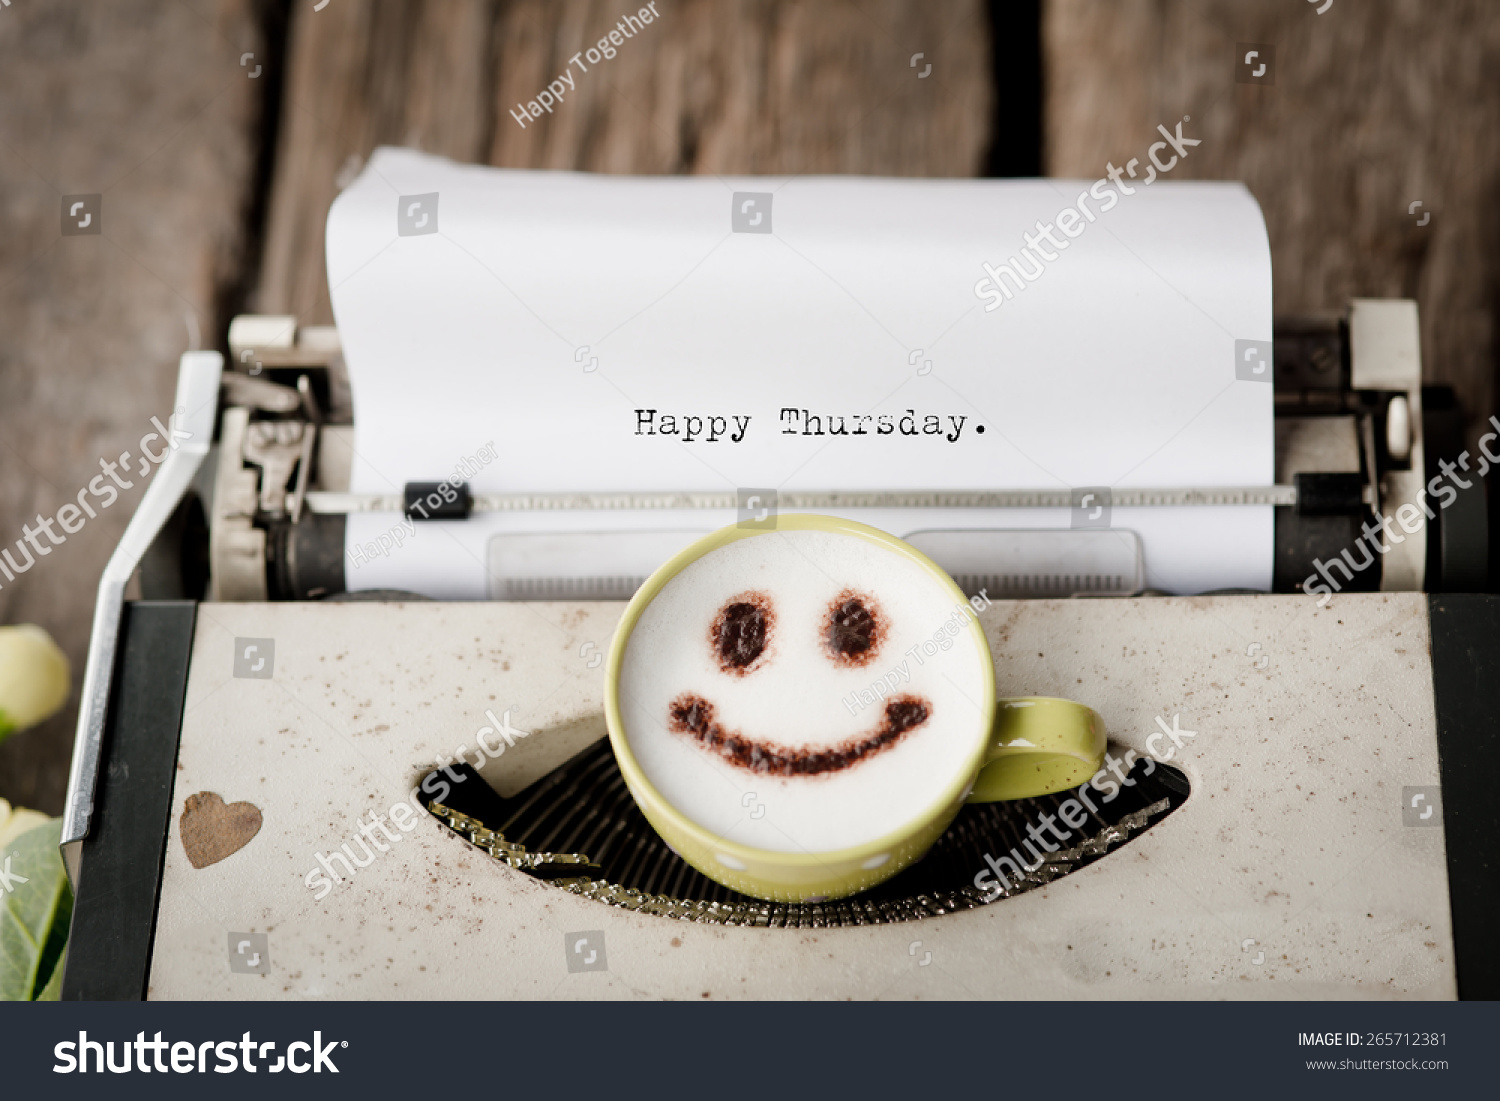 Bildergebnis für Happy Thursday with typewriter